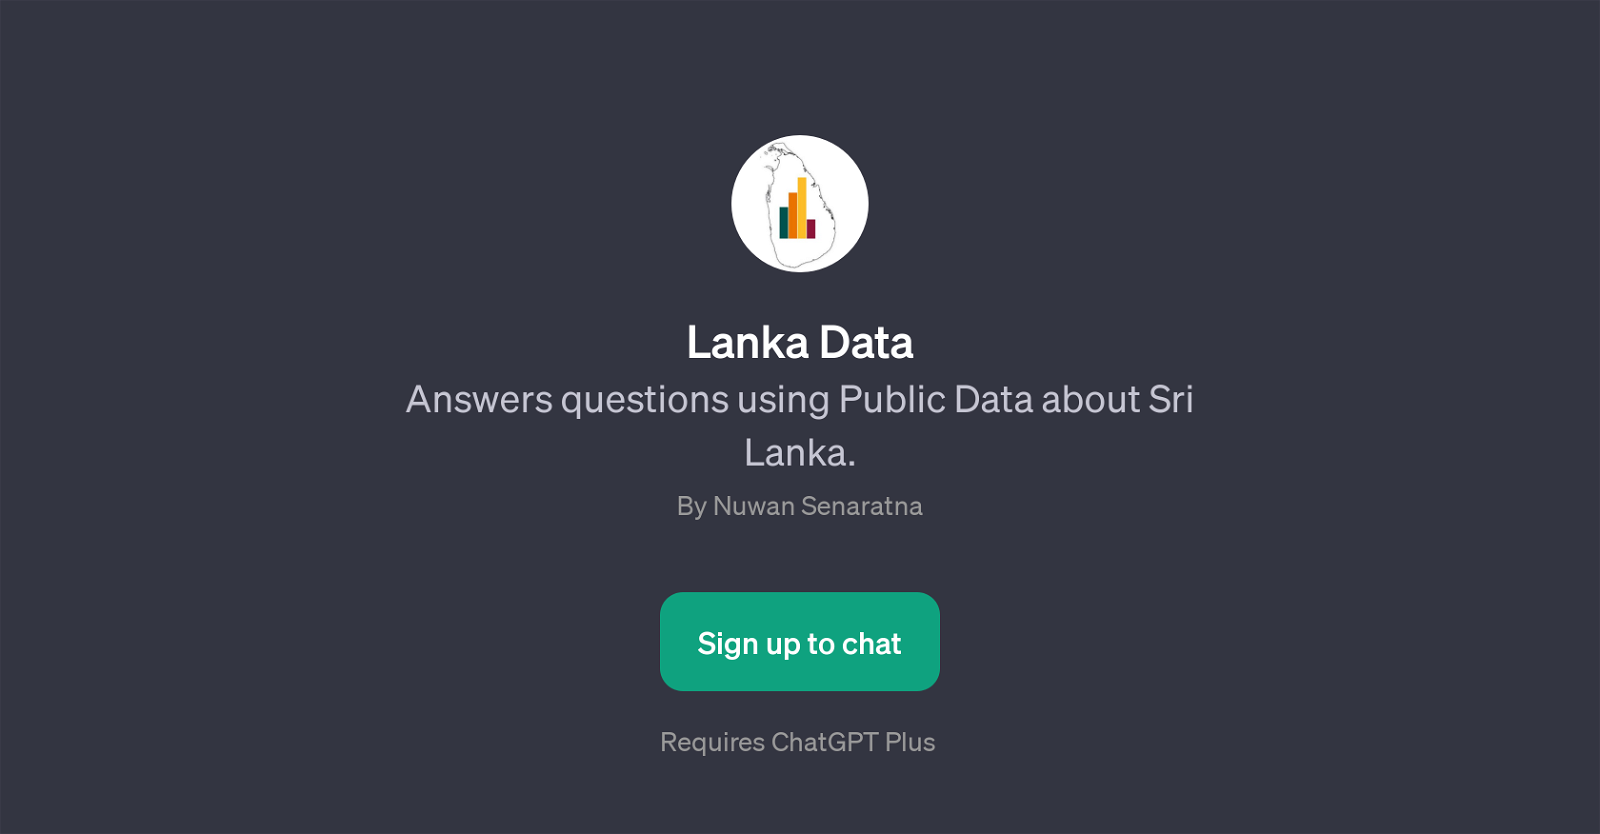 Lanka Data website